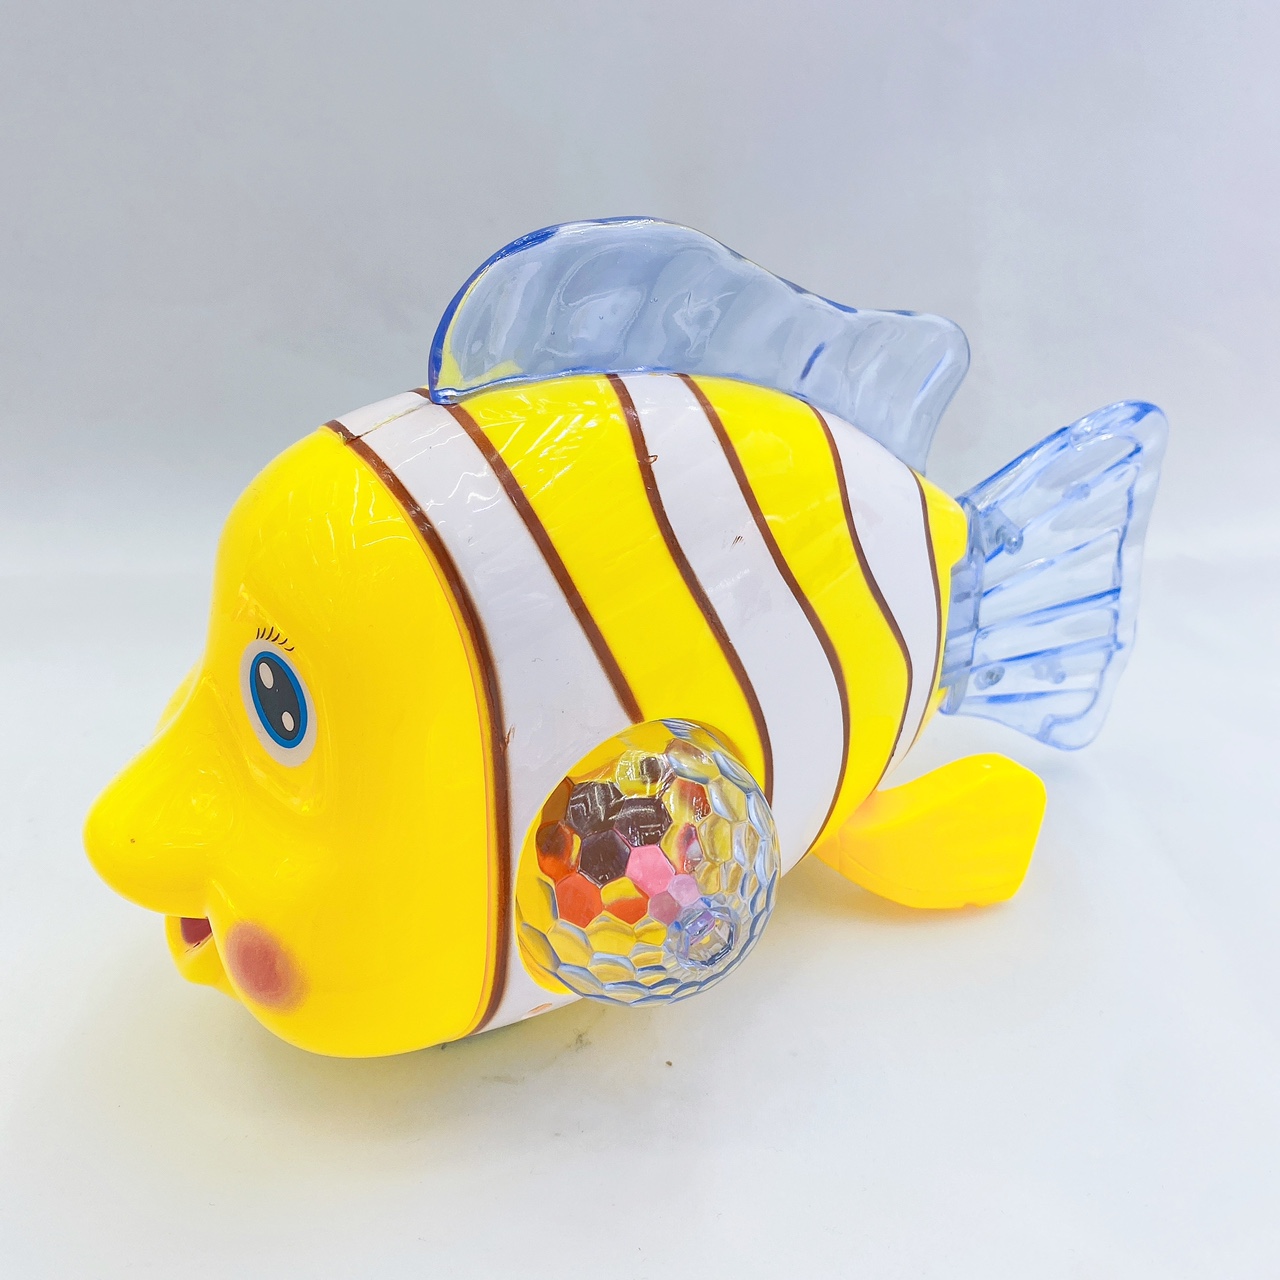 红松玩具小丑鱼鲤鱼电动玩具其他电动玩具批发01